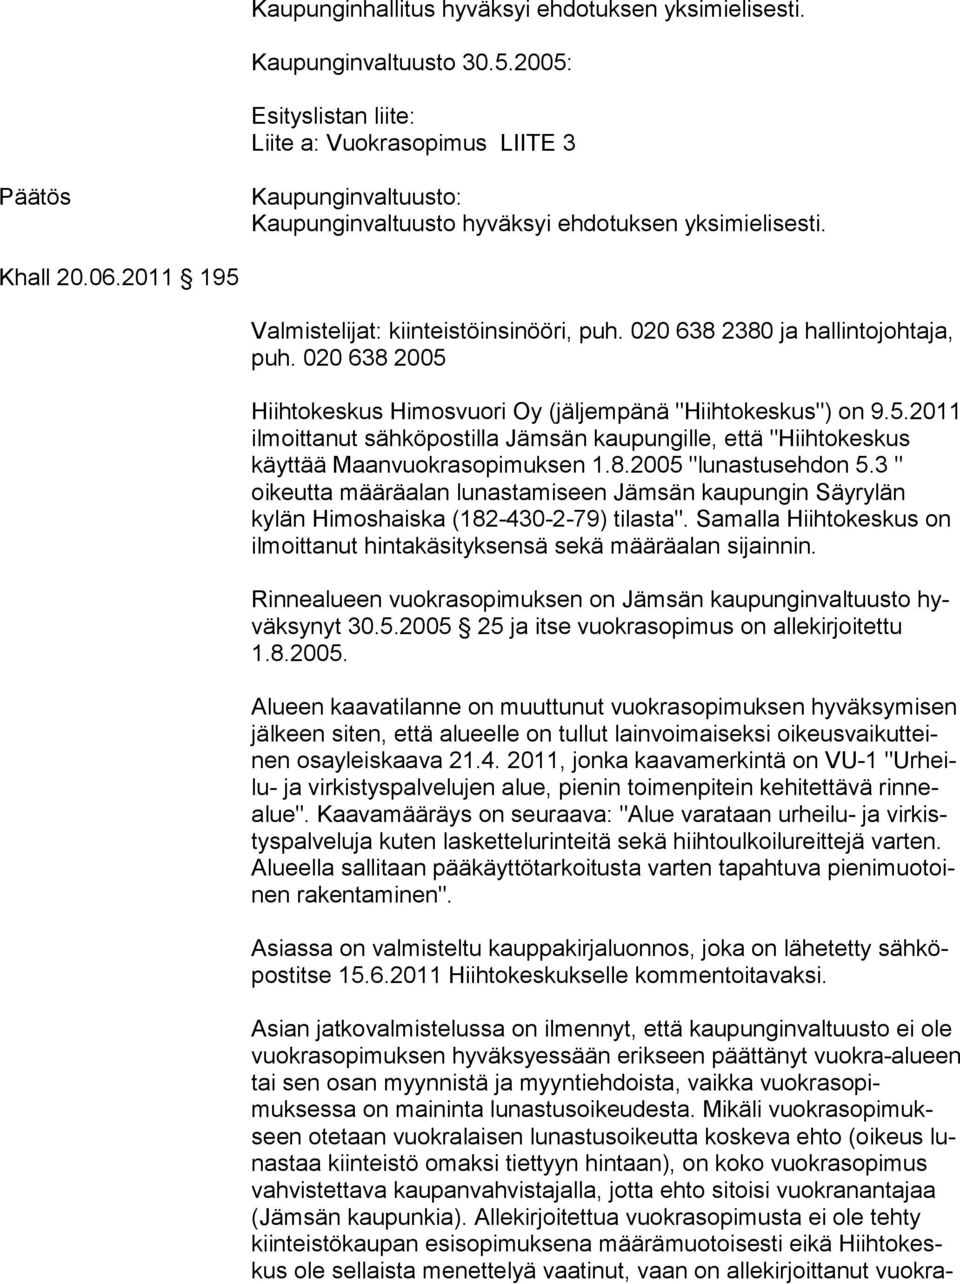 020 638 2380 ja hallintojohtaja, puh. 020 638 2005 Hiihtokeskus Himosvuori Oy (jäljempänä "Hiihtokeskus") on 9.5.2011 ilmoittanut sähköpostilla Jämsän kaupungille, että "Hiihto keskus käyttää Maanvuokrasopimuksen 1.